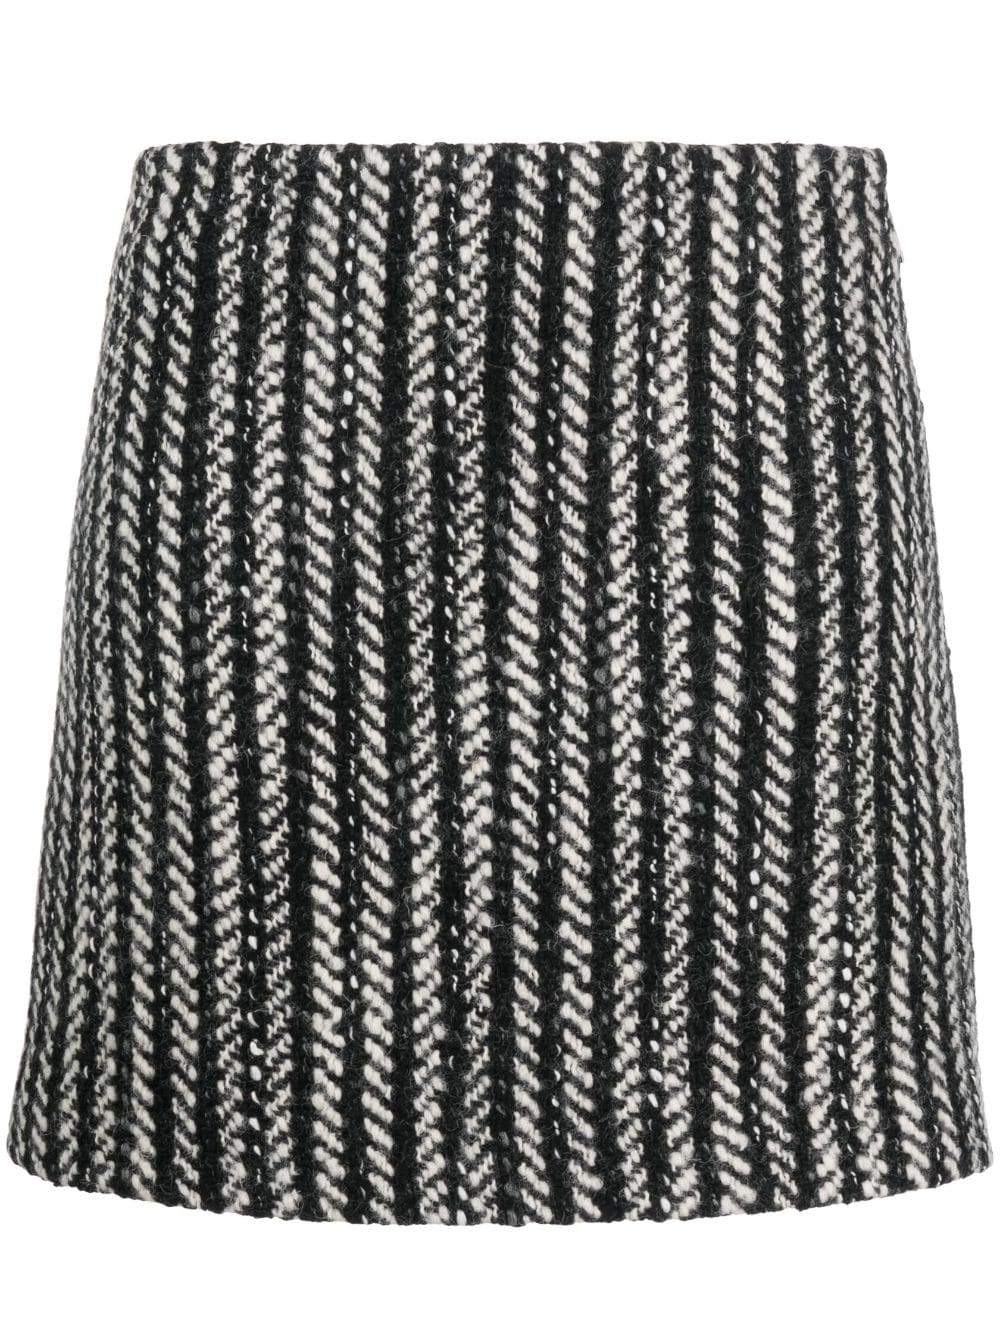 Msgm Two-tone Bouclé Miniskirt In Black